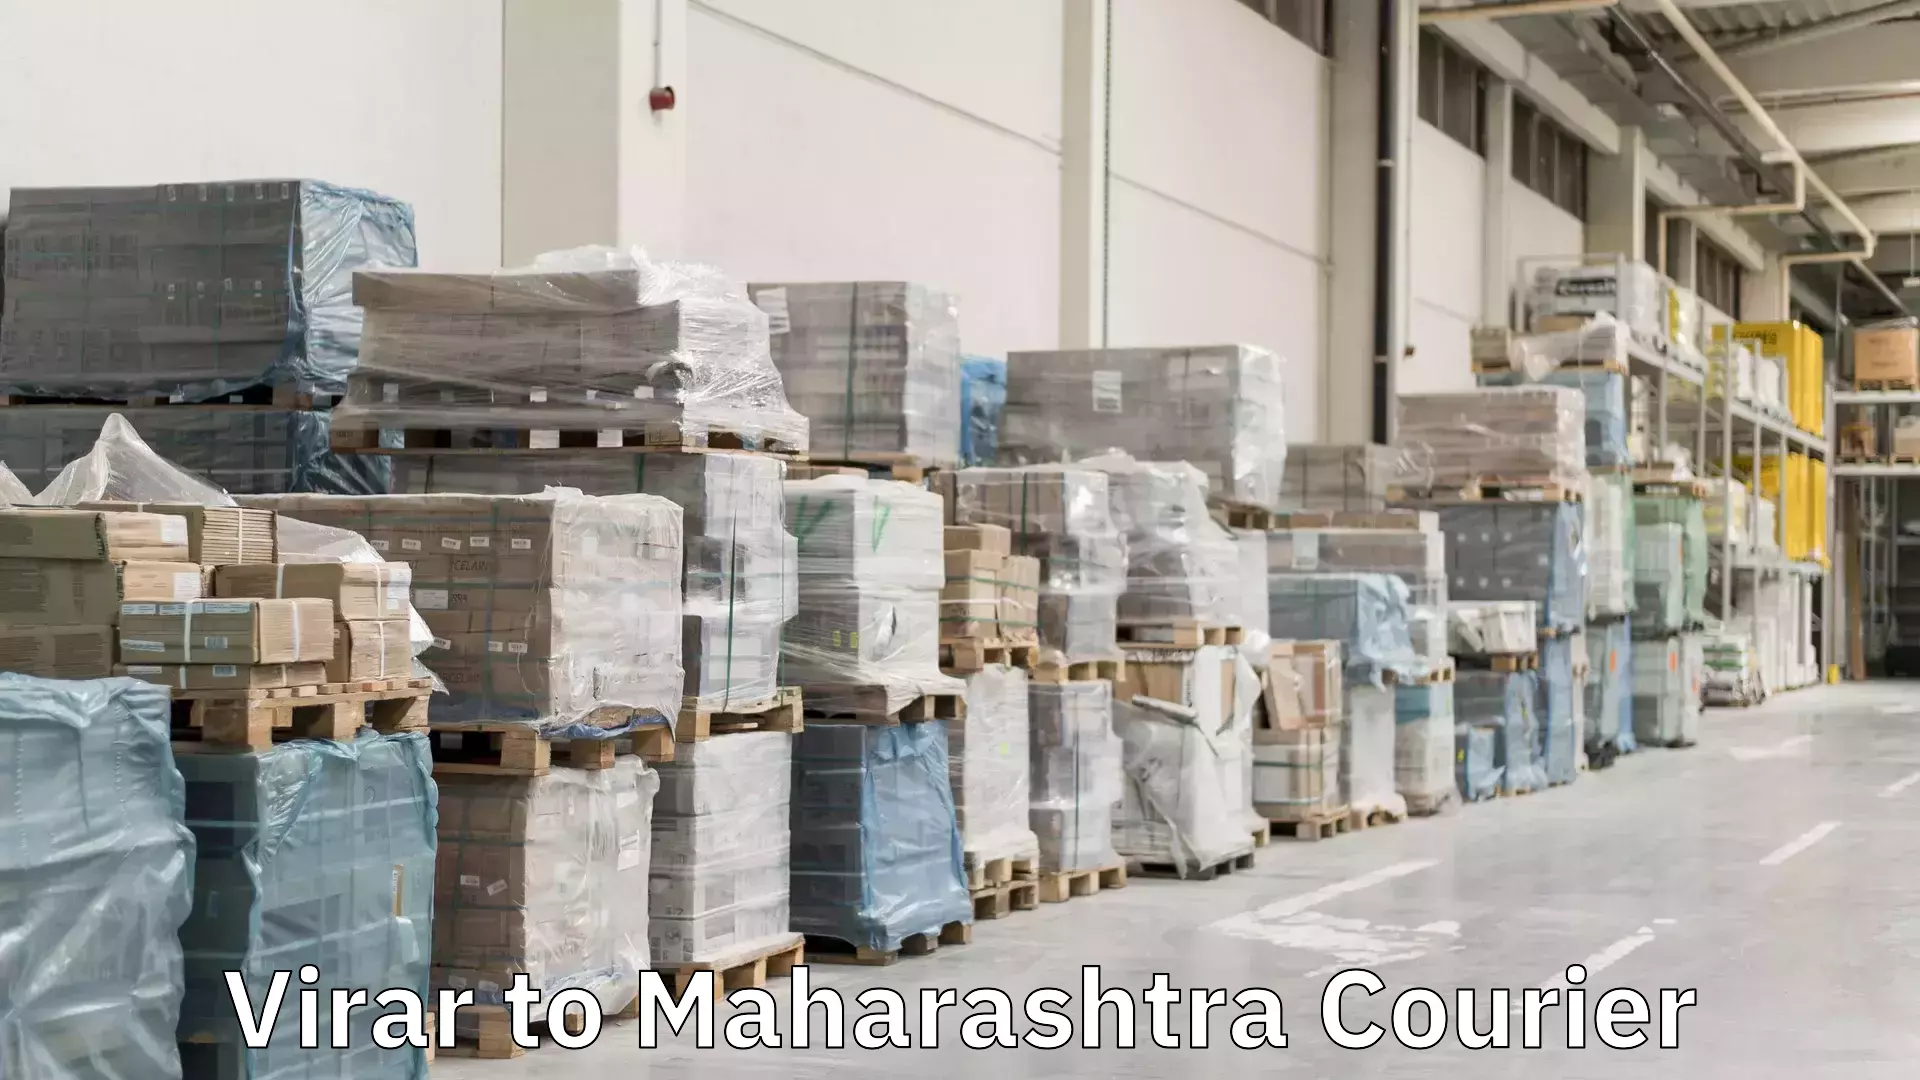 Full-service courier options Virar to Maharashtra